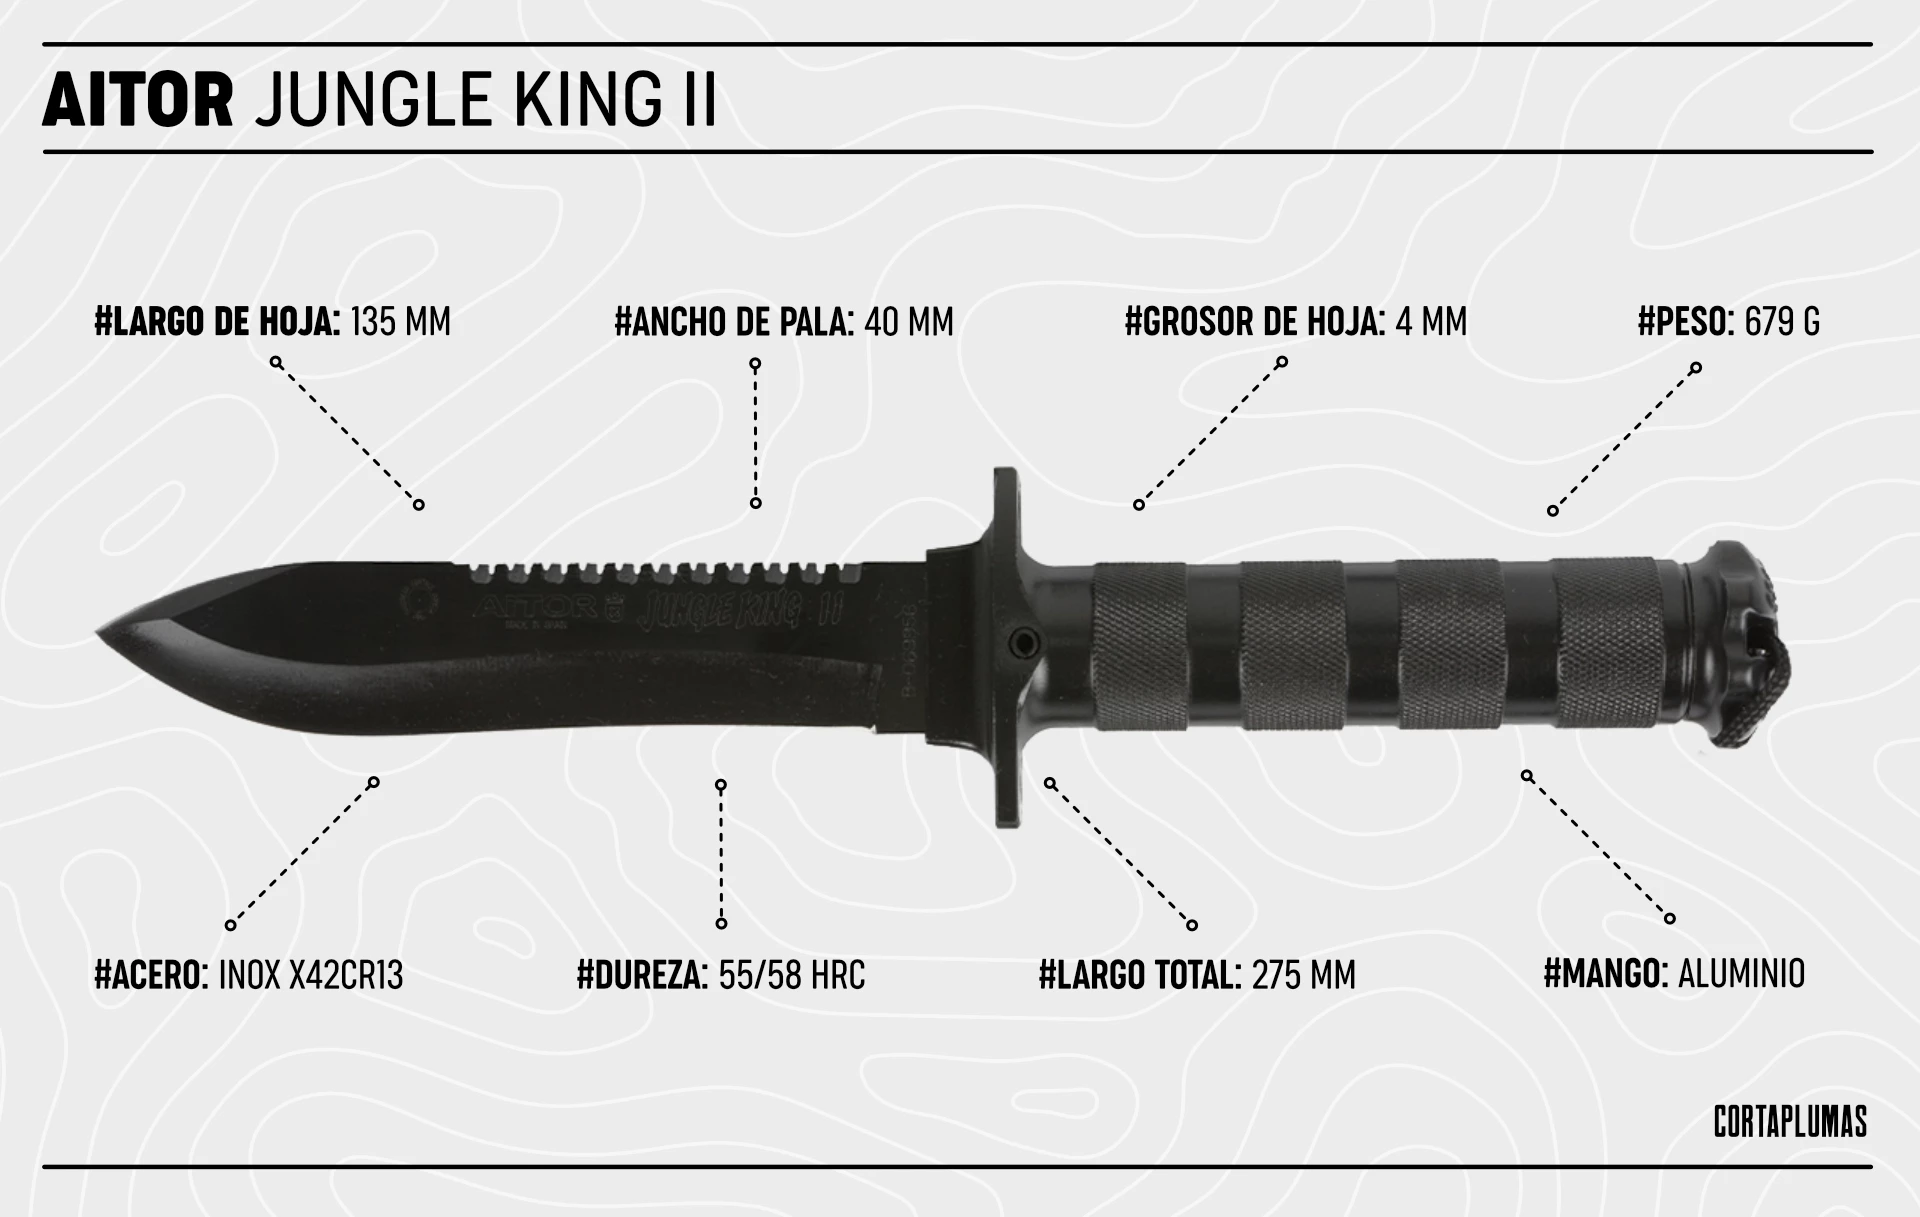 Cuchillo Aitor Jungle King 2 ii ll Original - Opinion - Especiaficaciones